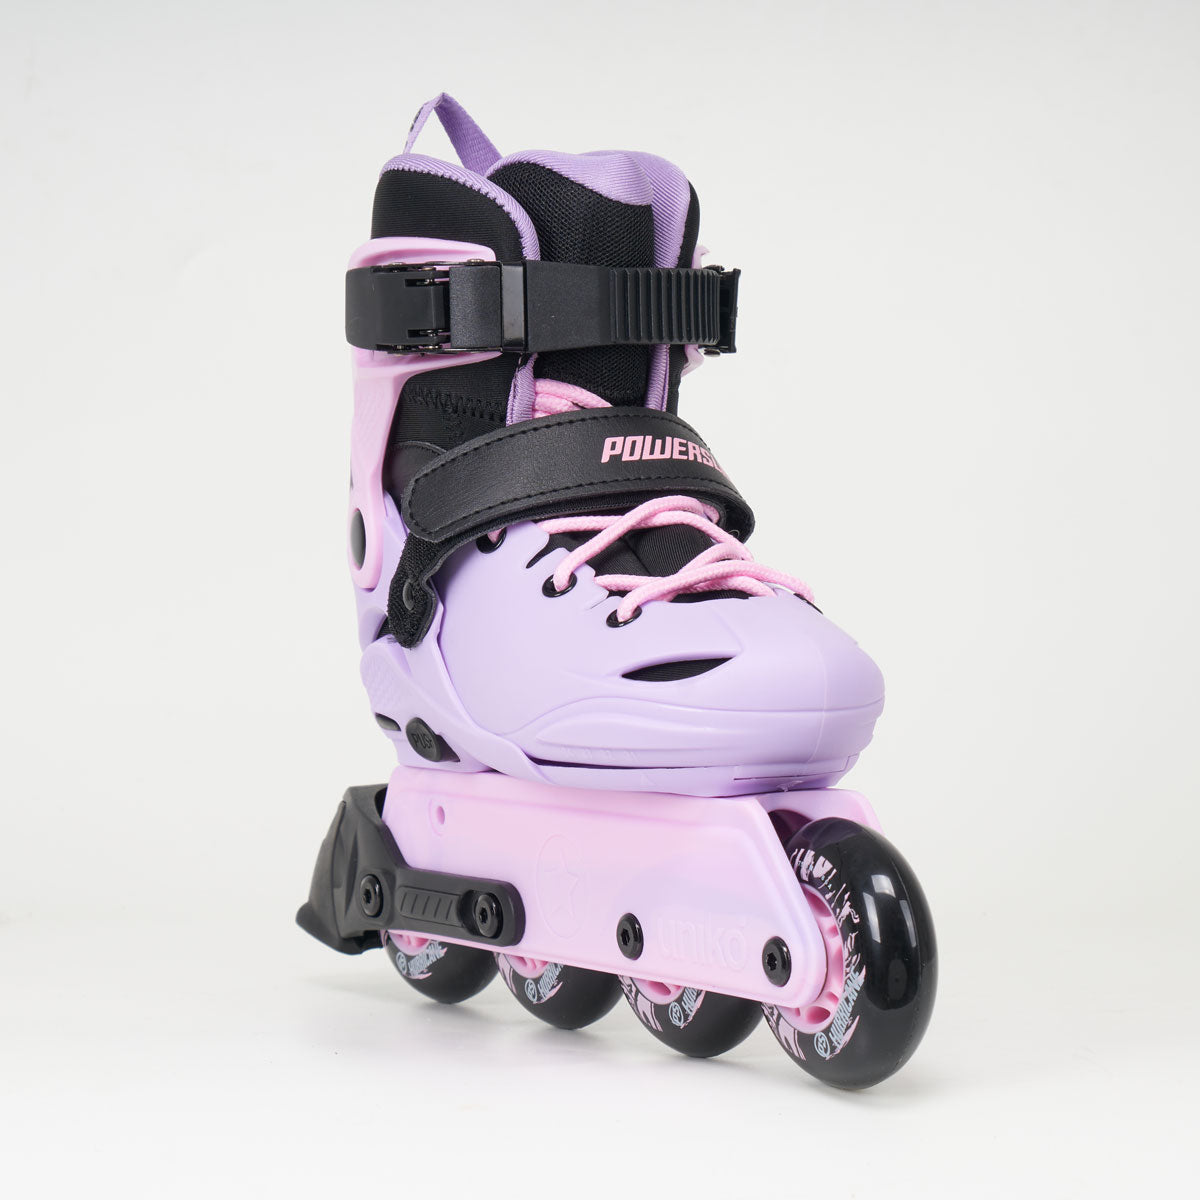 Powerslide Jet Junior Adjustable Skates - Lavender